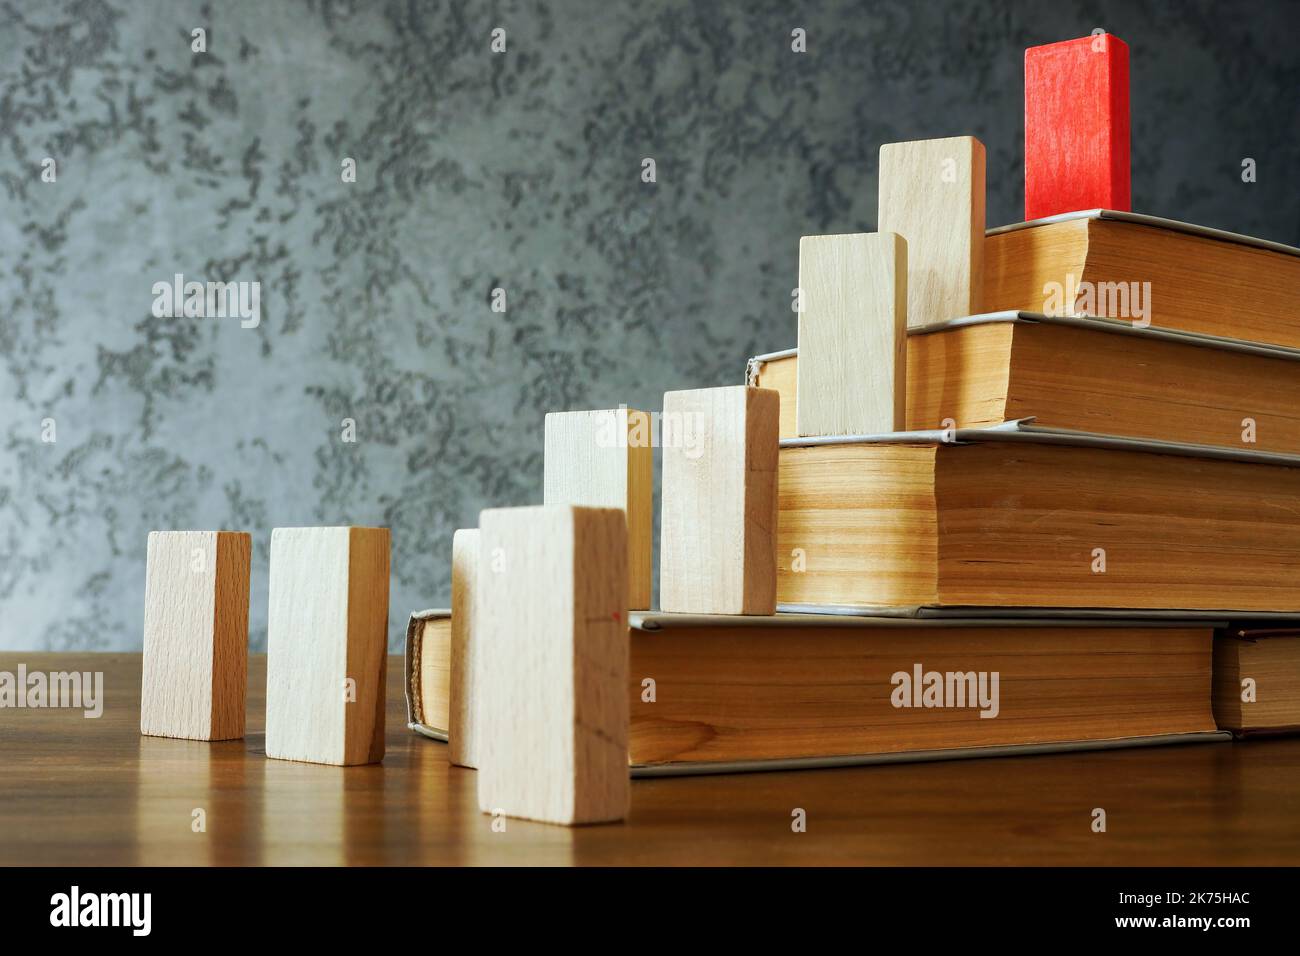 Bücher und Führer an der Spitze. Durchdachtes Führungs- und Wissenskonzept. Stockfoto